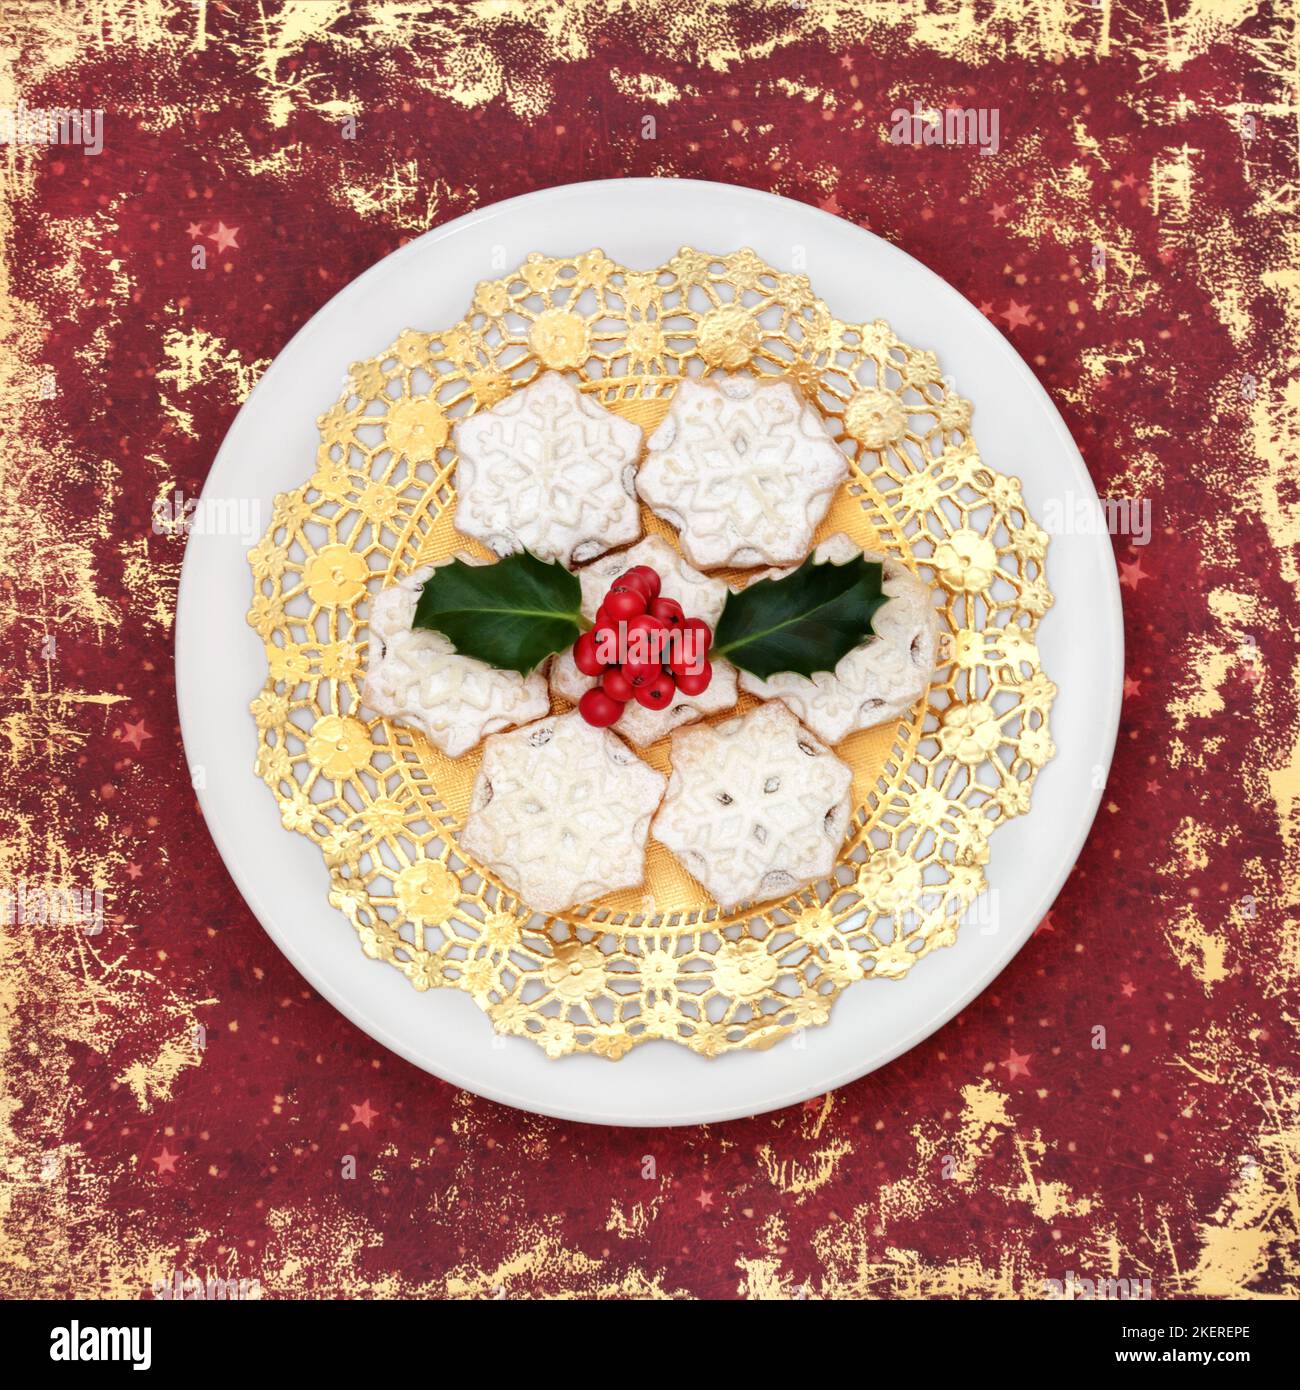 Hausgemachte Weihnachtsgebäck mit Winterholly auf weißem Teller und rotem Grunge-Hintergrund. Festliches Design für traditionelle Speisen zu Weihnachten und Neujahr. Stockfoto